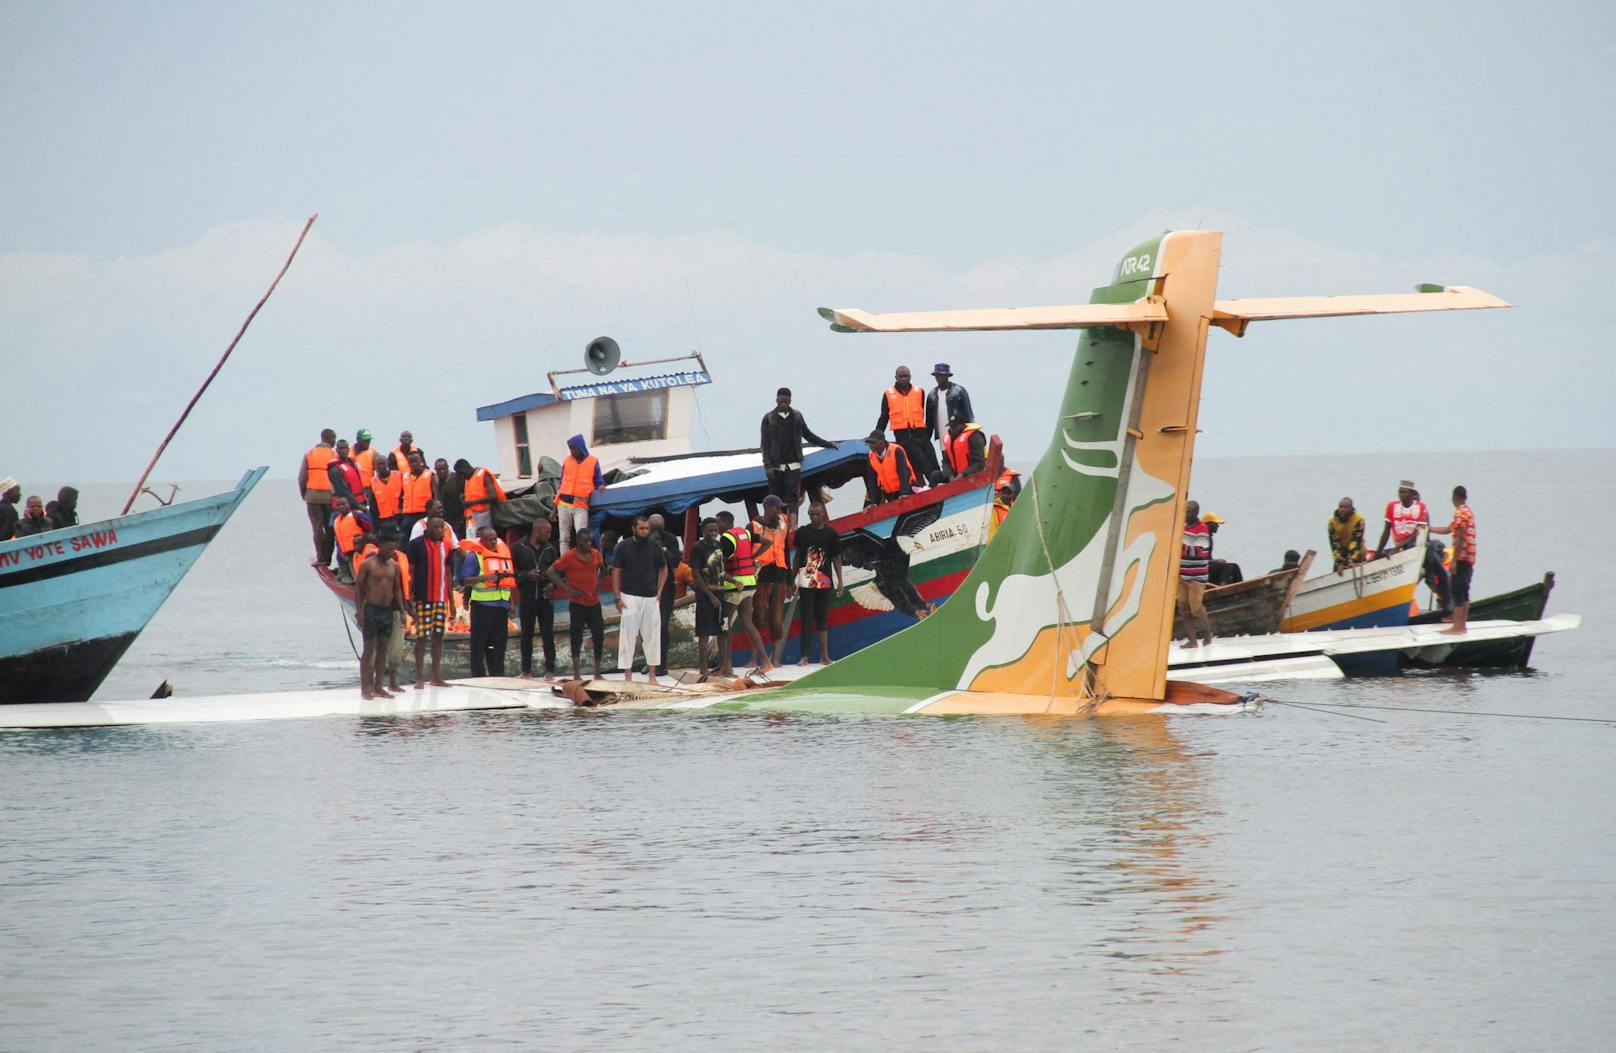 19 Tote: Flugzeug stürzt bei Landung in den Victoriasee